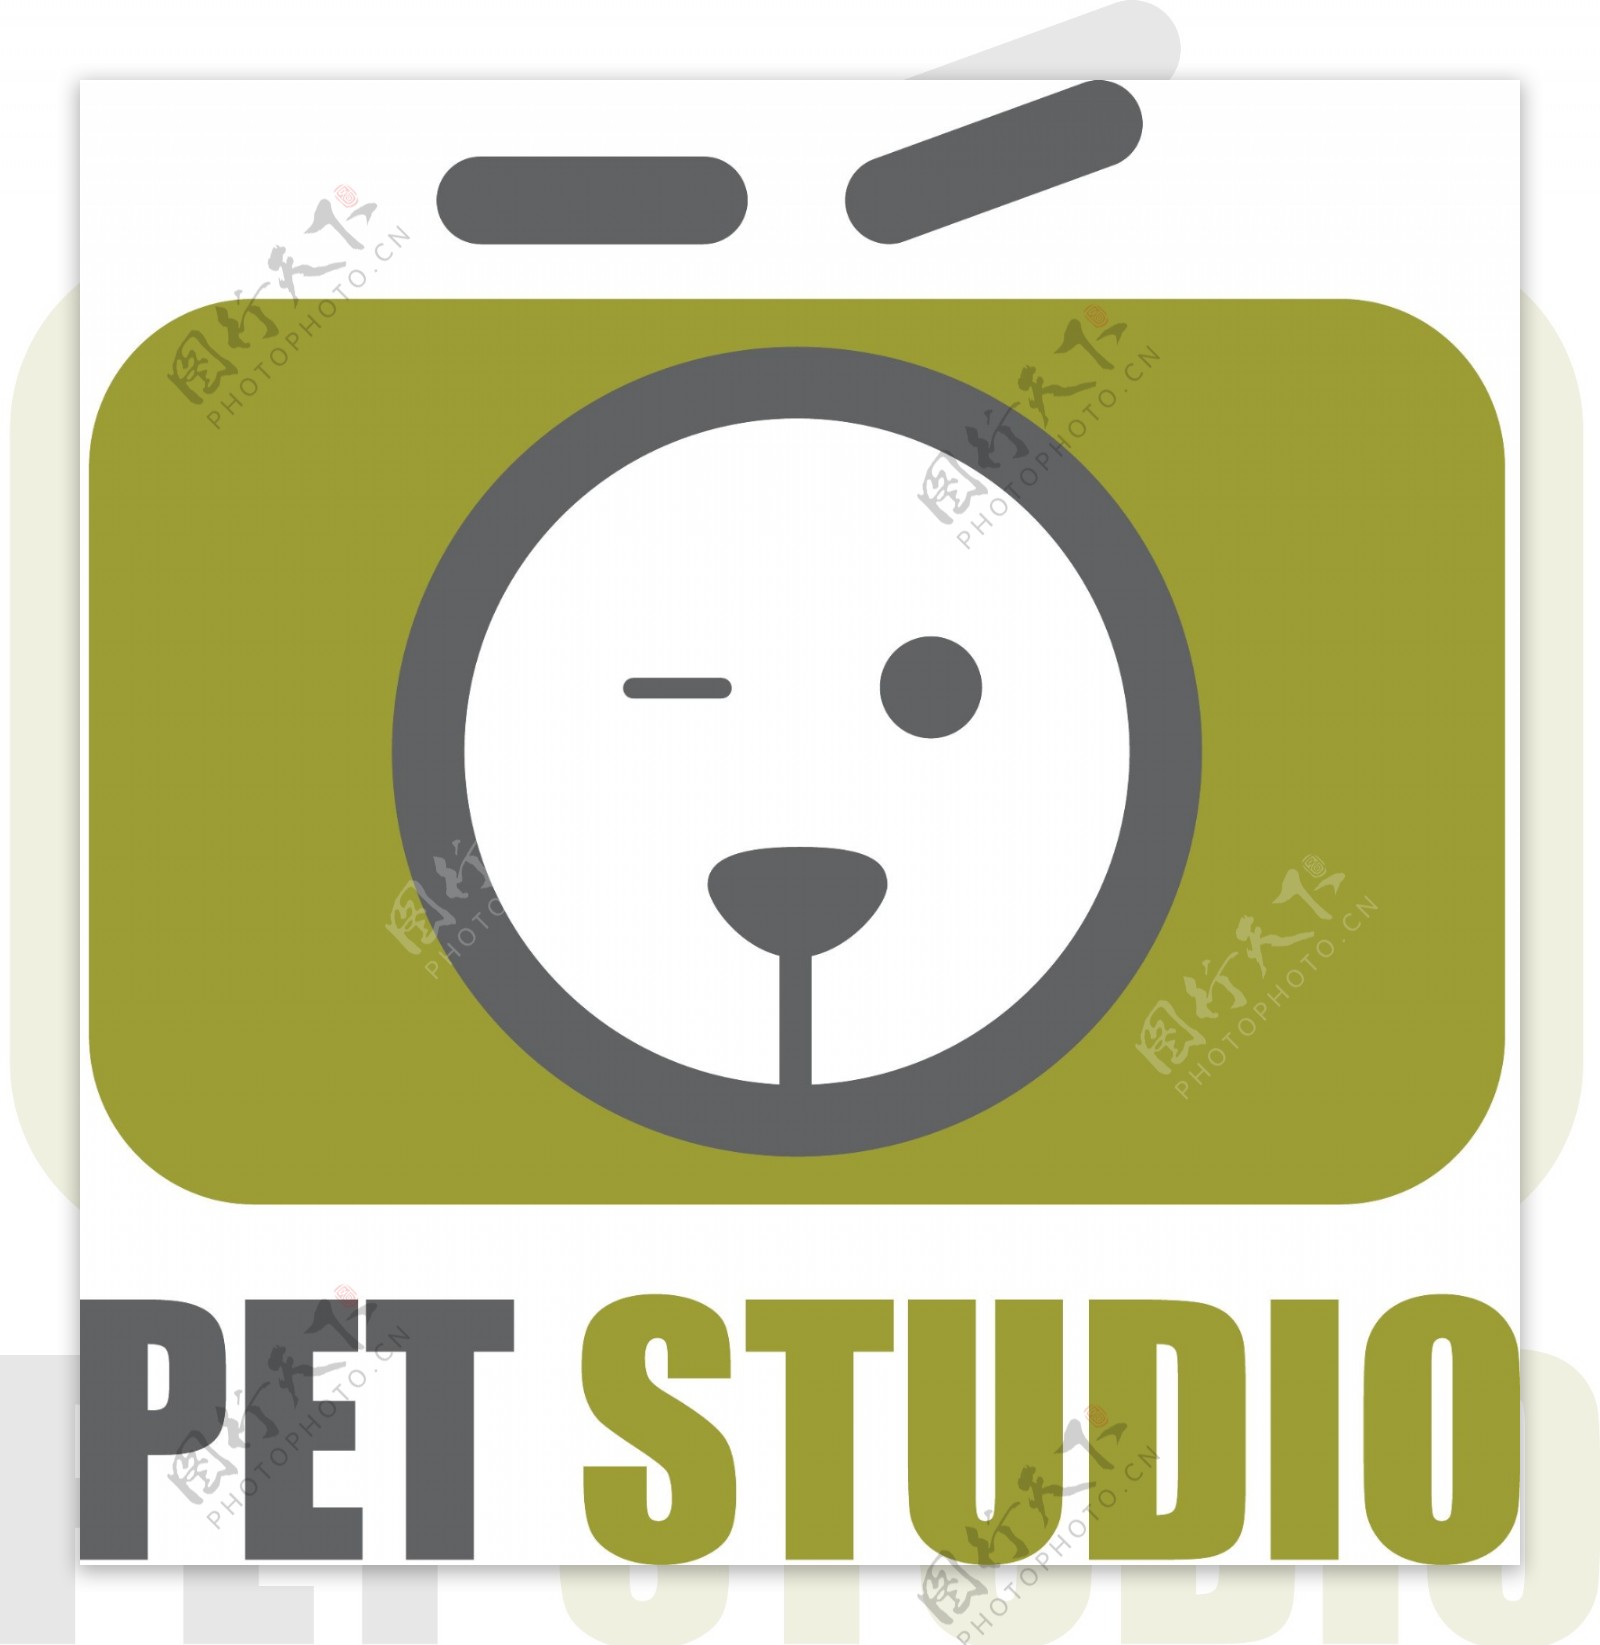 宠物工作室logo设计